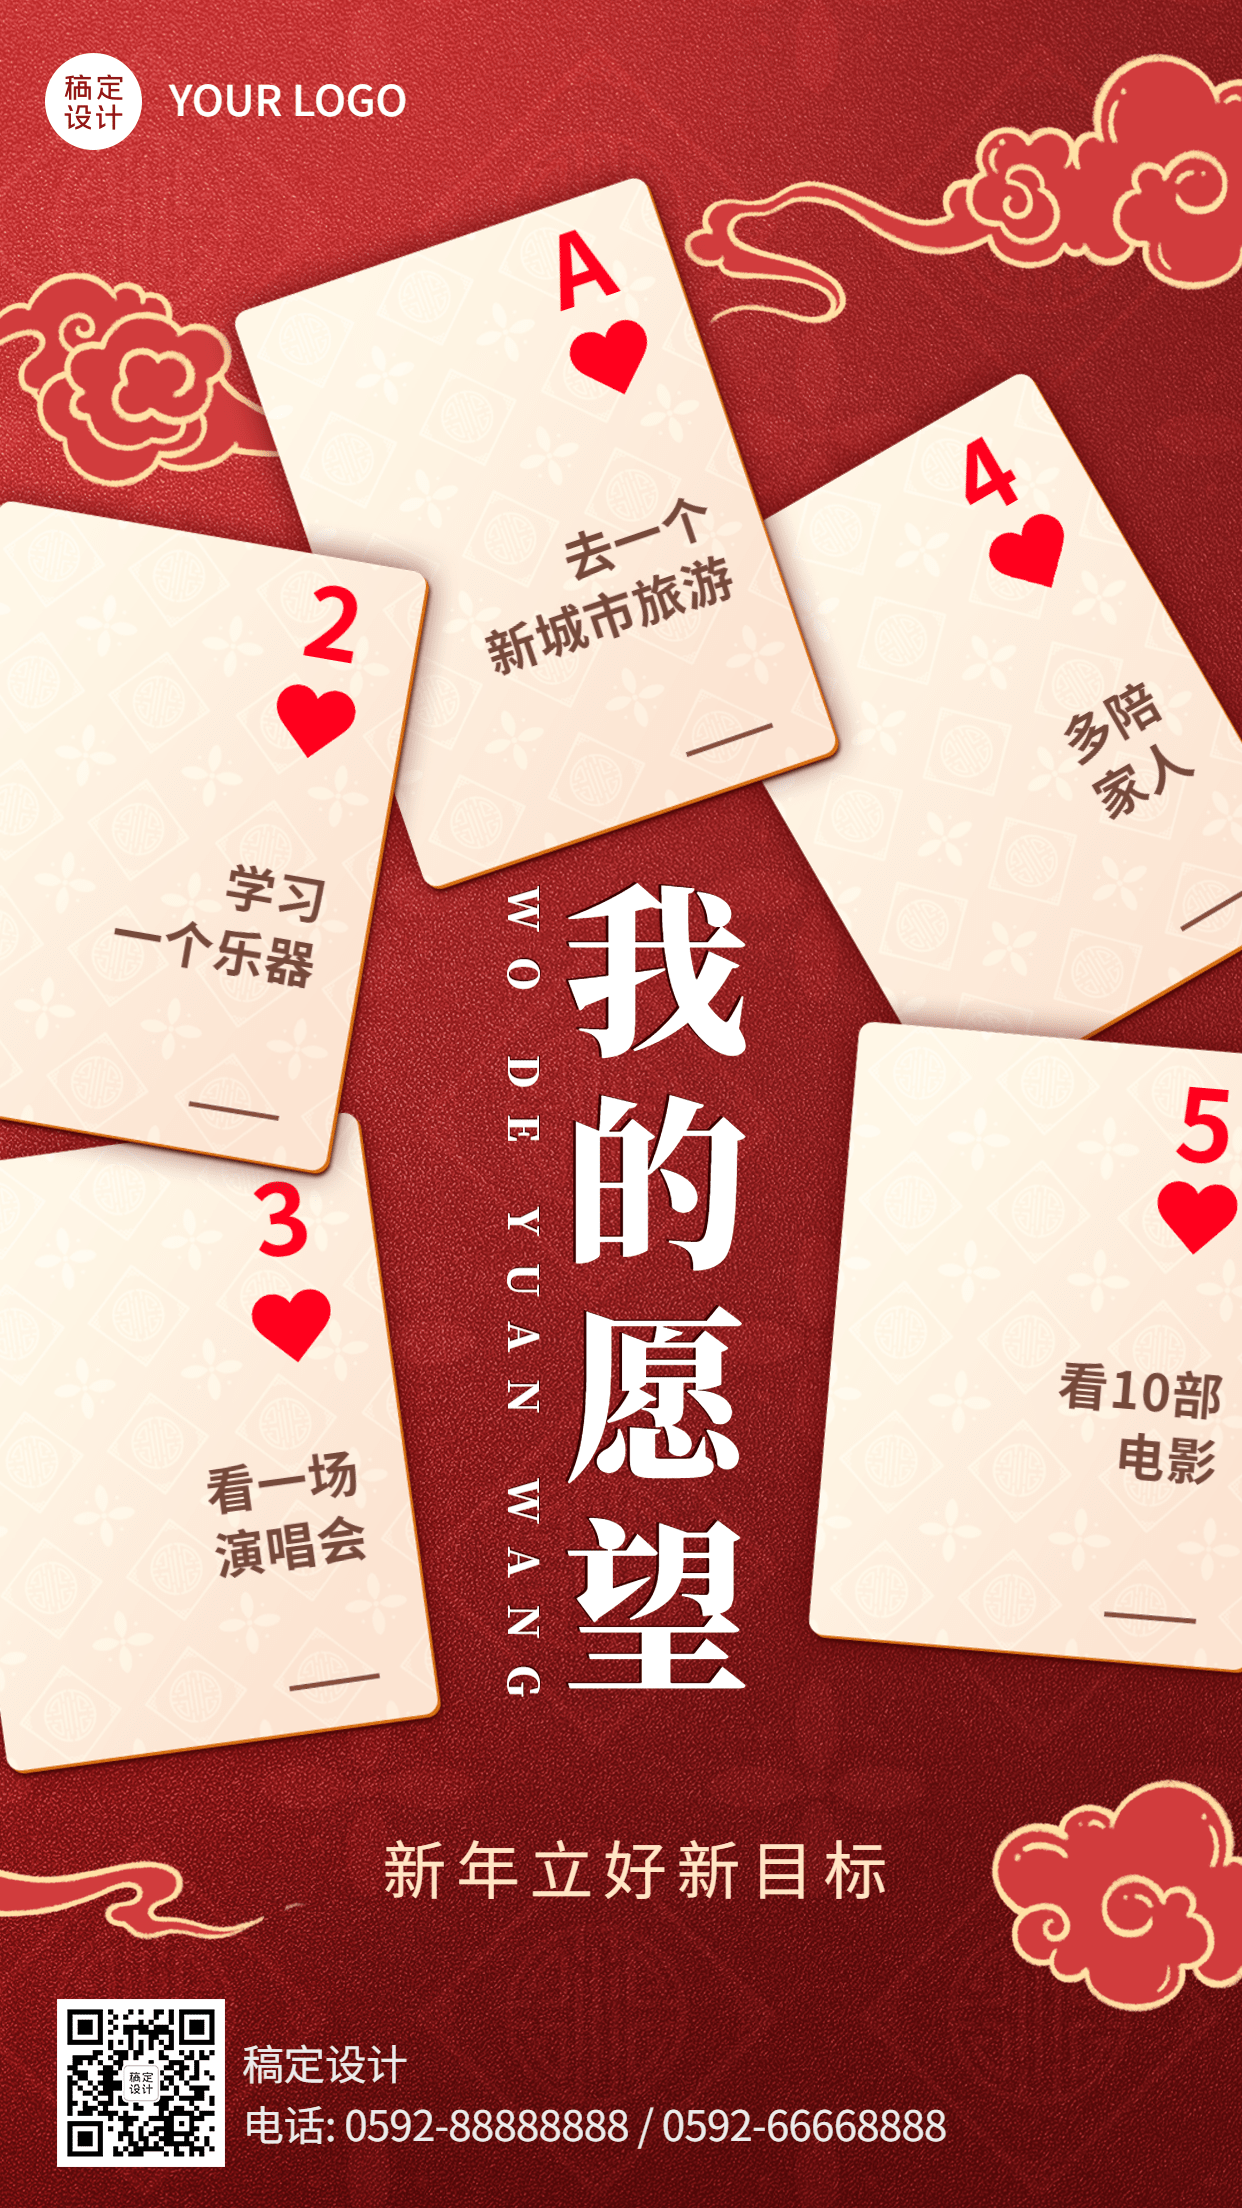 春节新年愿望创意卡牌手机海报预览效果